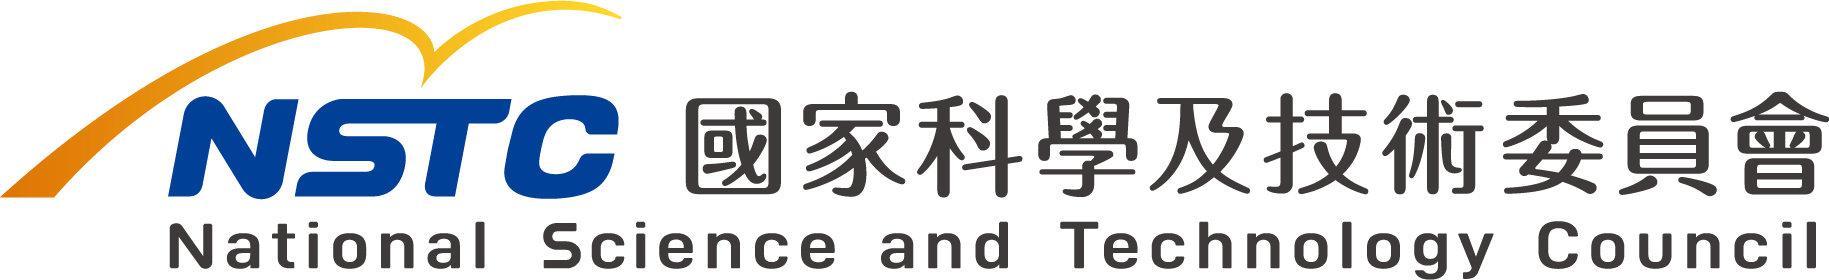 NSTC中華民國國家科學及技術委員會官網